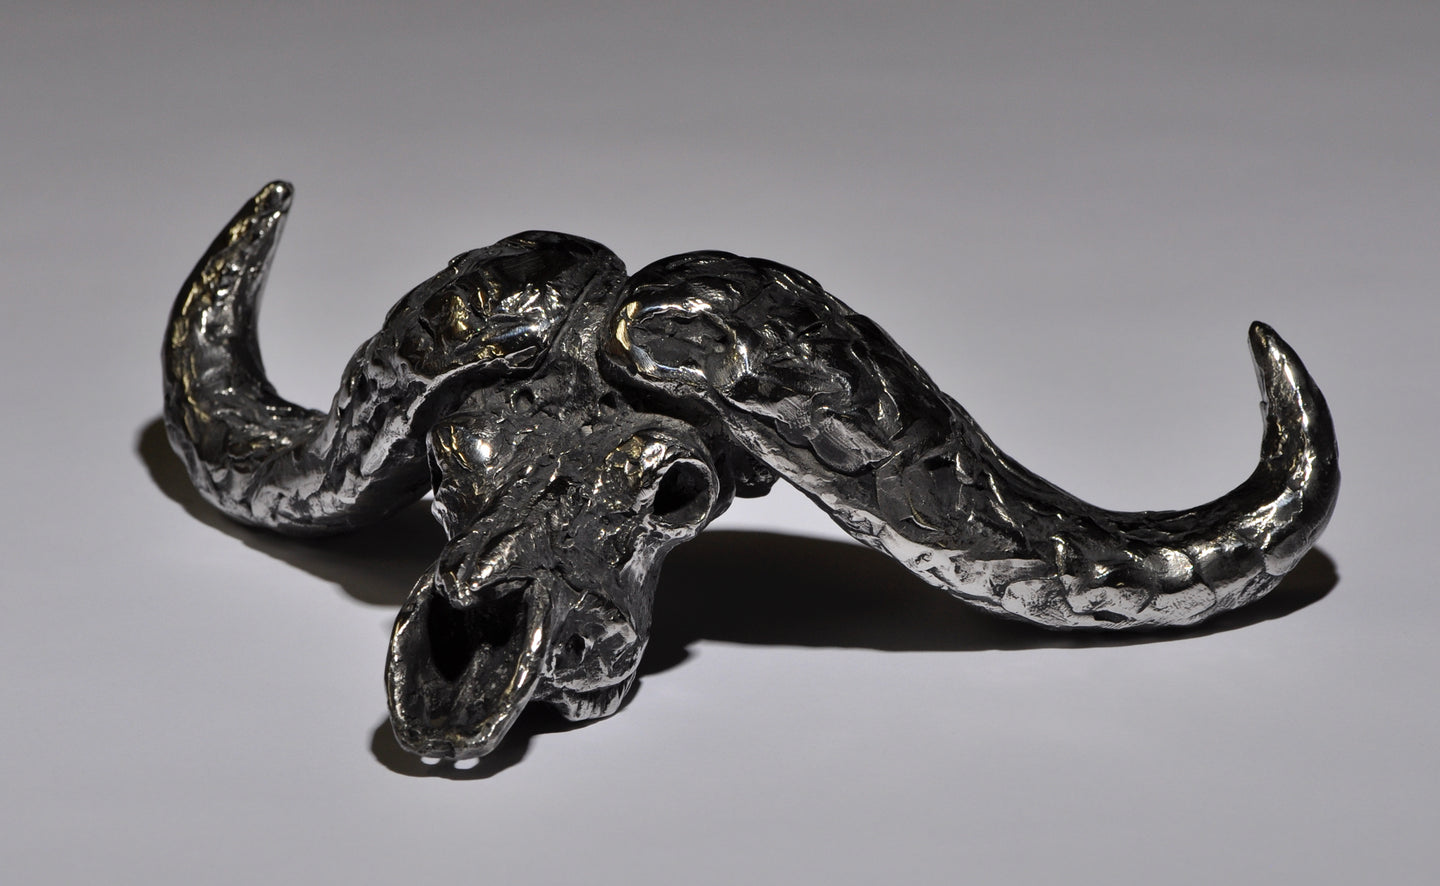 Mick Doellinger-Cape Buffalo Skull-Stainless Steel Sculpture